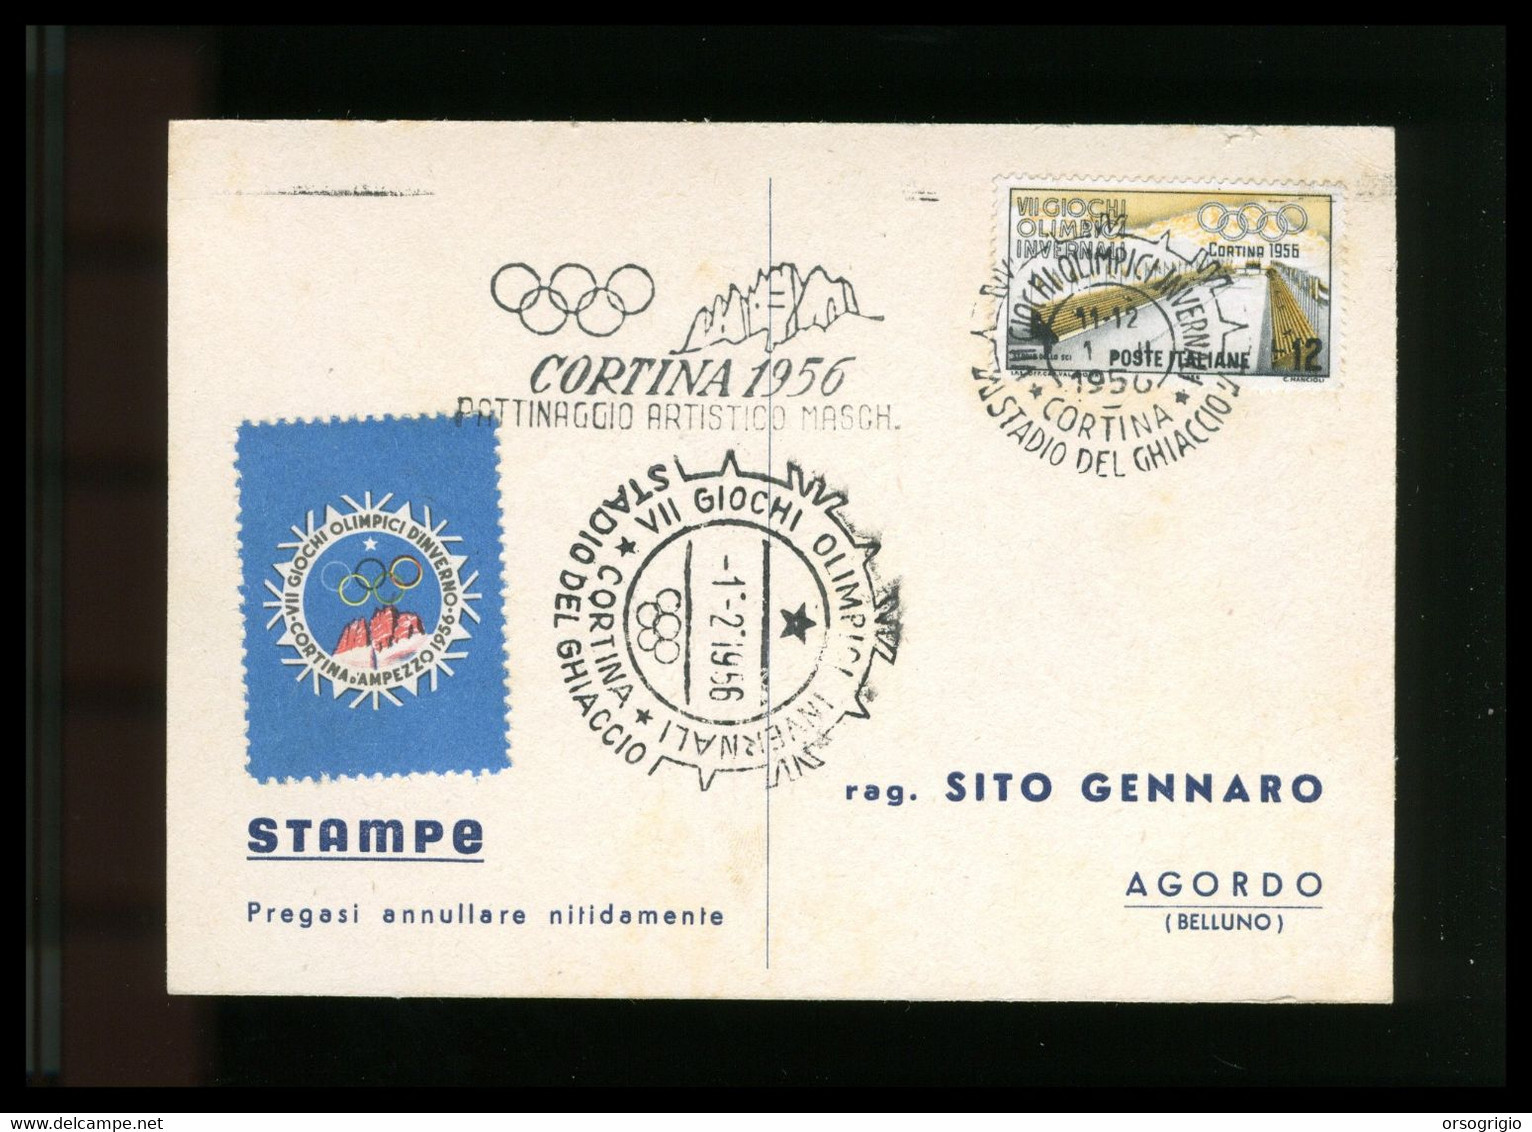 ITALIA - 1956 GIOCHI OLIMPICI INVERNALI Di CORTINA D'AMPEZZO - PATTINAGGIO ARTISTICO MASCHILE -  1-2-1956    LUSSO - Invierno 1956: Cortina D'Ampezzo